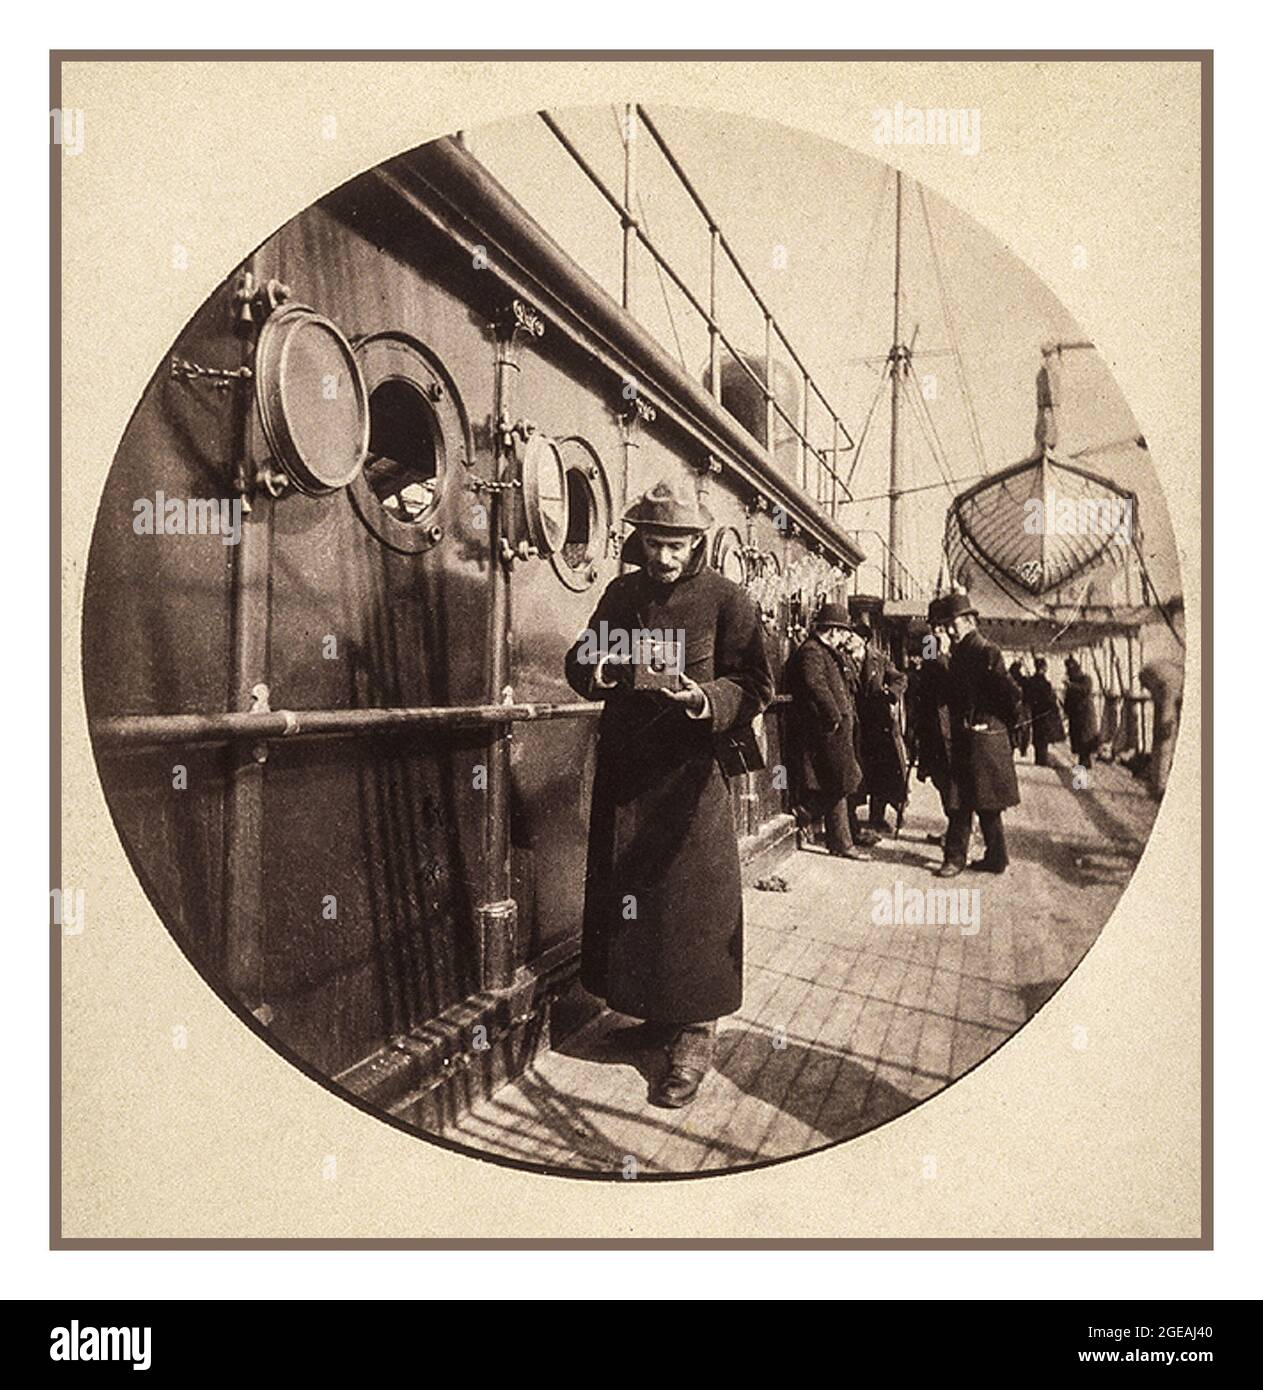 GEORGE EASTMAN (1854-1932) tenant un ancien appareil photo-photo Kodak sur un NAVIRE SS GALLIA dans les années 1890, pris par Fred Church - George Eastman était un inventeur américain industriel et visionnaire pour la caméra mobile de film en rouleau et fondateur de The éponyme Eastman Kodak Company à Rochester, État de New York, États-Unis Banque D'Images